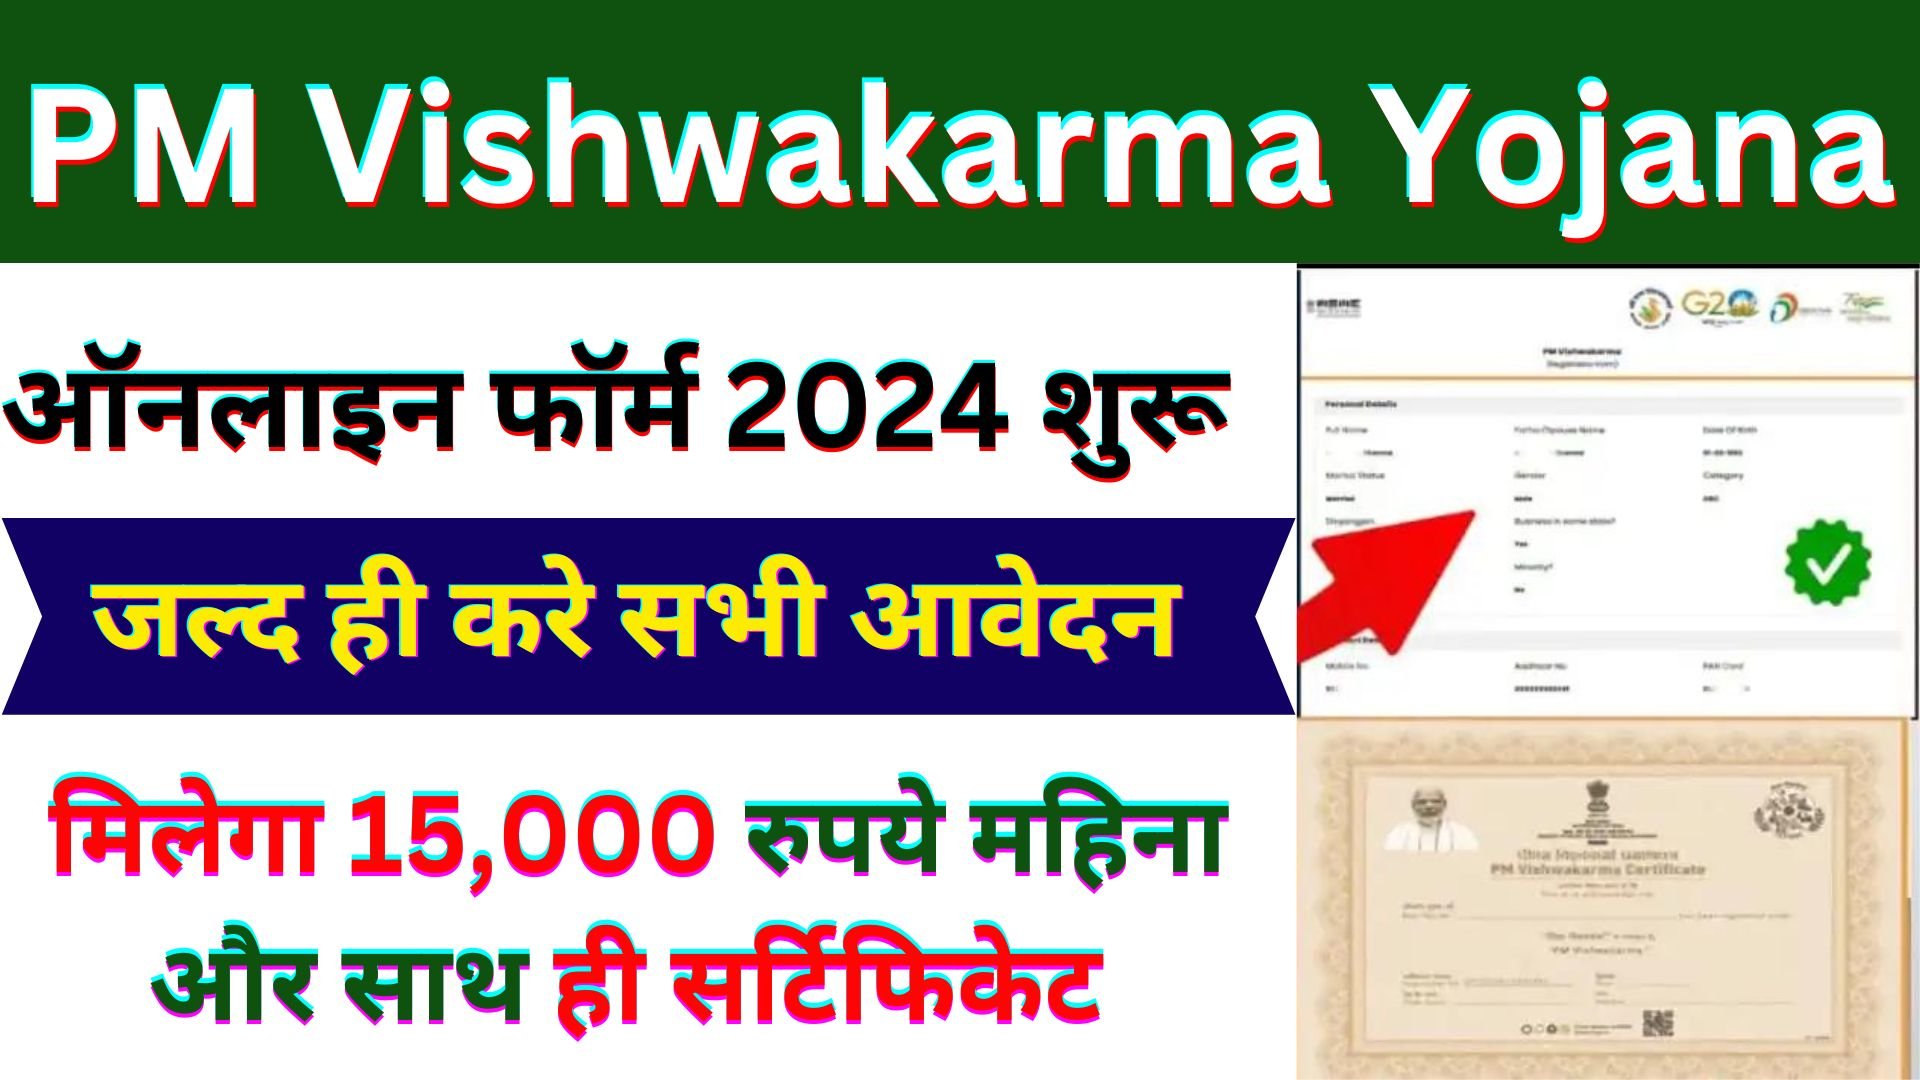 PM Vishwakarma Yojana Registration 2024 Kaise Kare : यहाँ से करे आवेदन मिलेगा 15,000 का लाभ